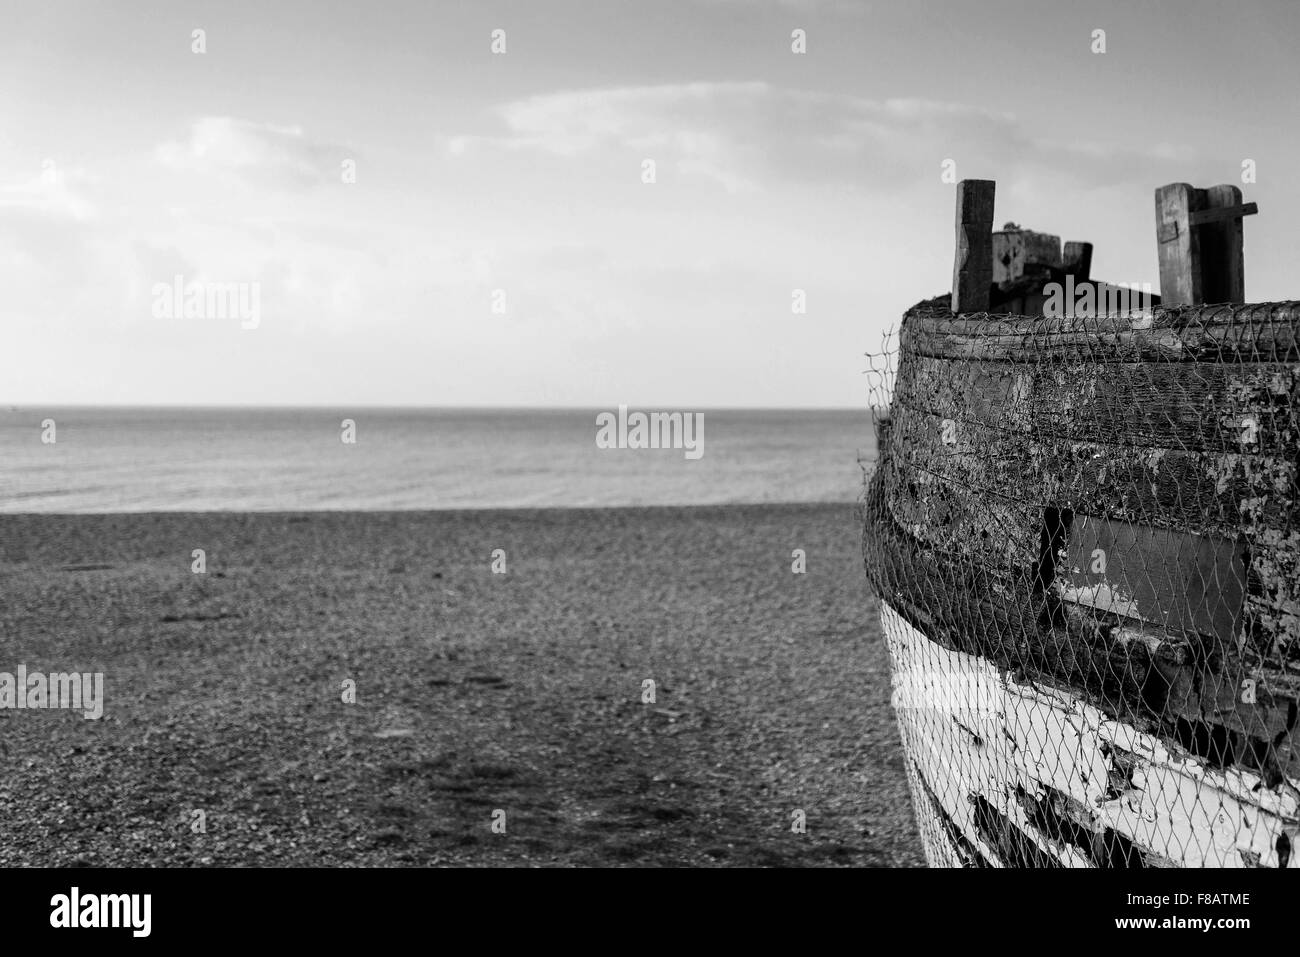 Vieux bateau de pêche abandonnés sur la plage en noir et blanc Banque D'Images